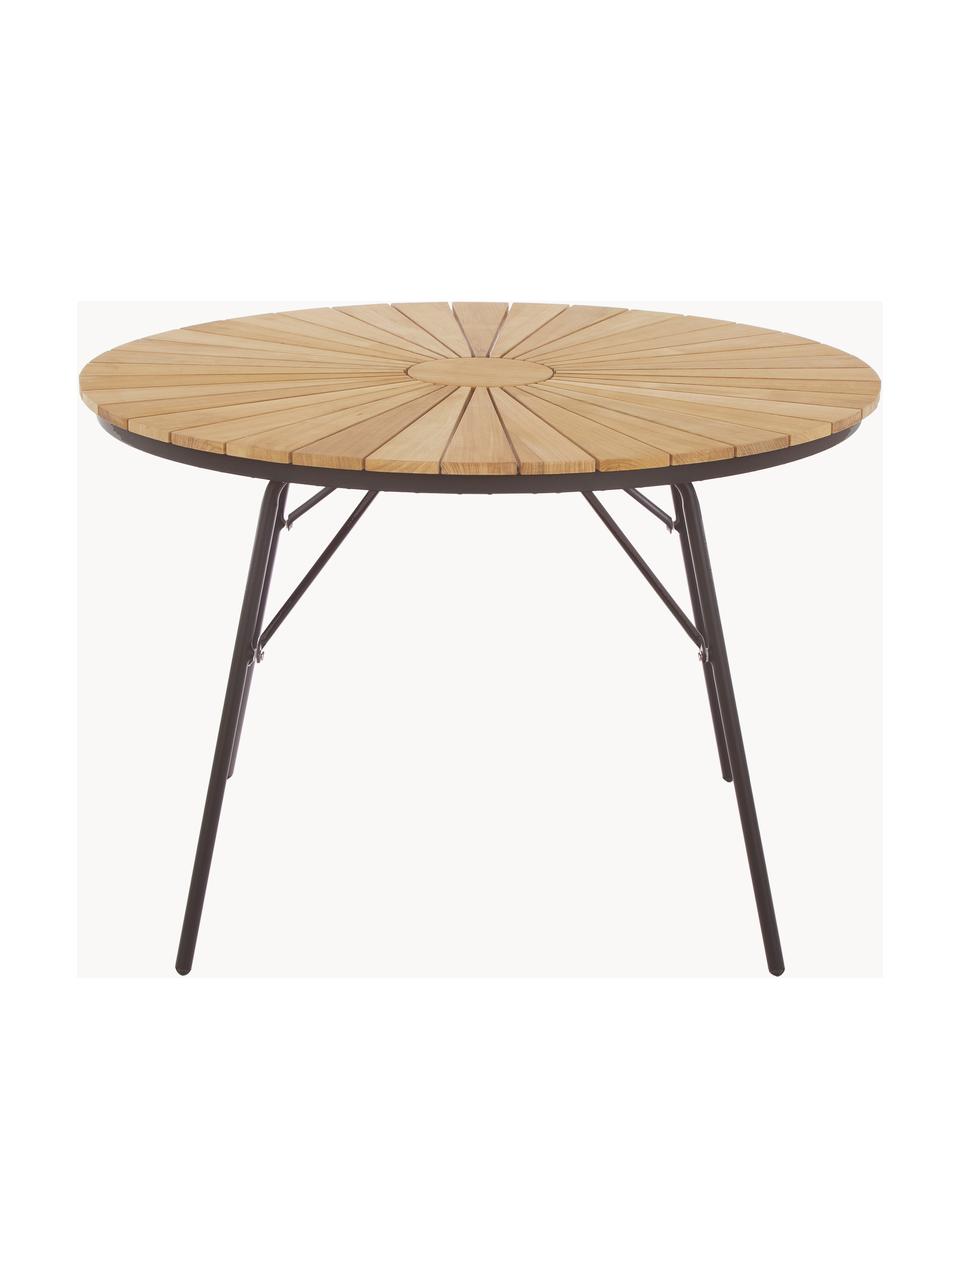 Kulatý zahradní stůl s deskou z teakového dřeva Hard & Ellen, různé velikosti, Teakové dřevo, antracitová, Ø 110 cm, V 73 cm